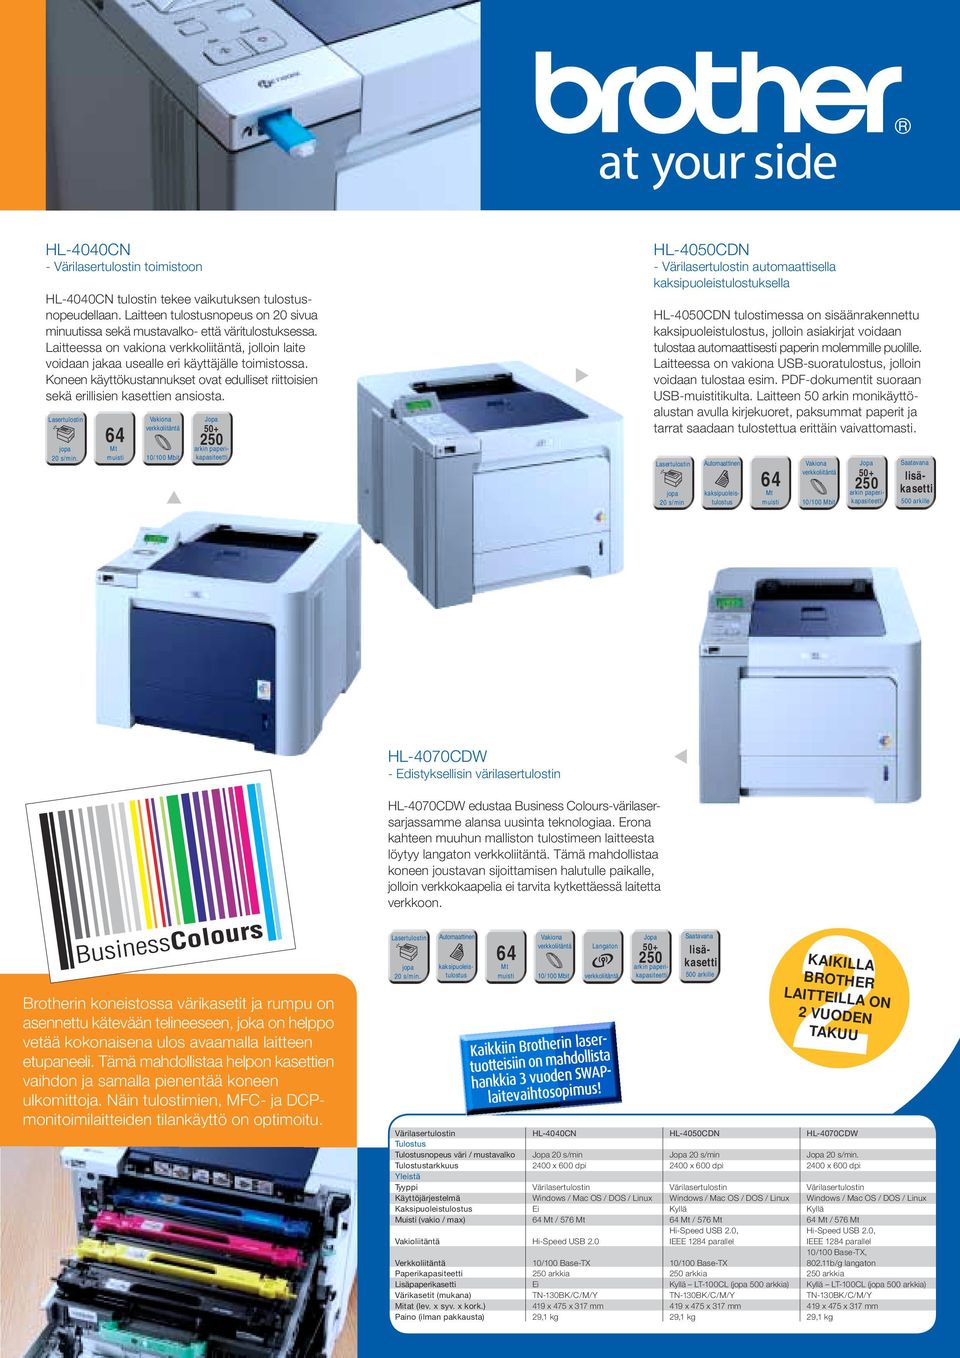 64 Mt HL-4050CDN - Värilasertulostin automaattisella kaksipuoleistulostuksella HL-4050CDN tulostimessa on sisäänrakennettu kaksipuoleistulostus, jolloin asiakirjat voidaan tulostaa automaattisesti